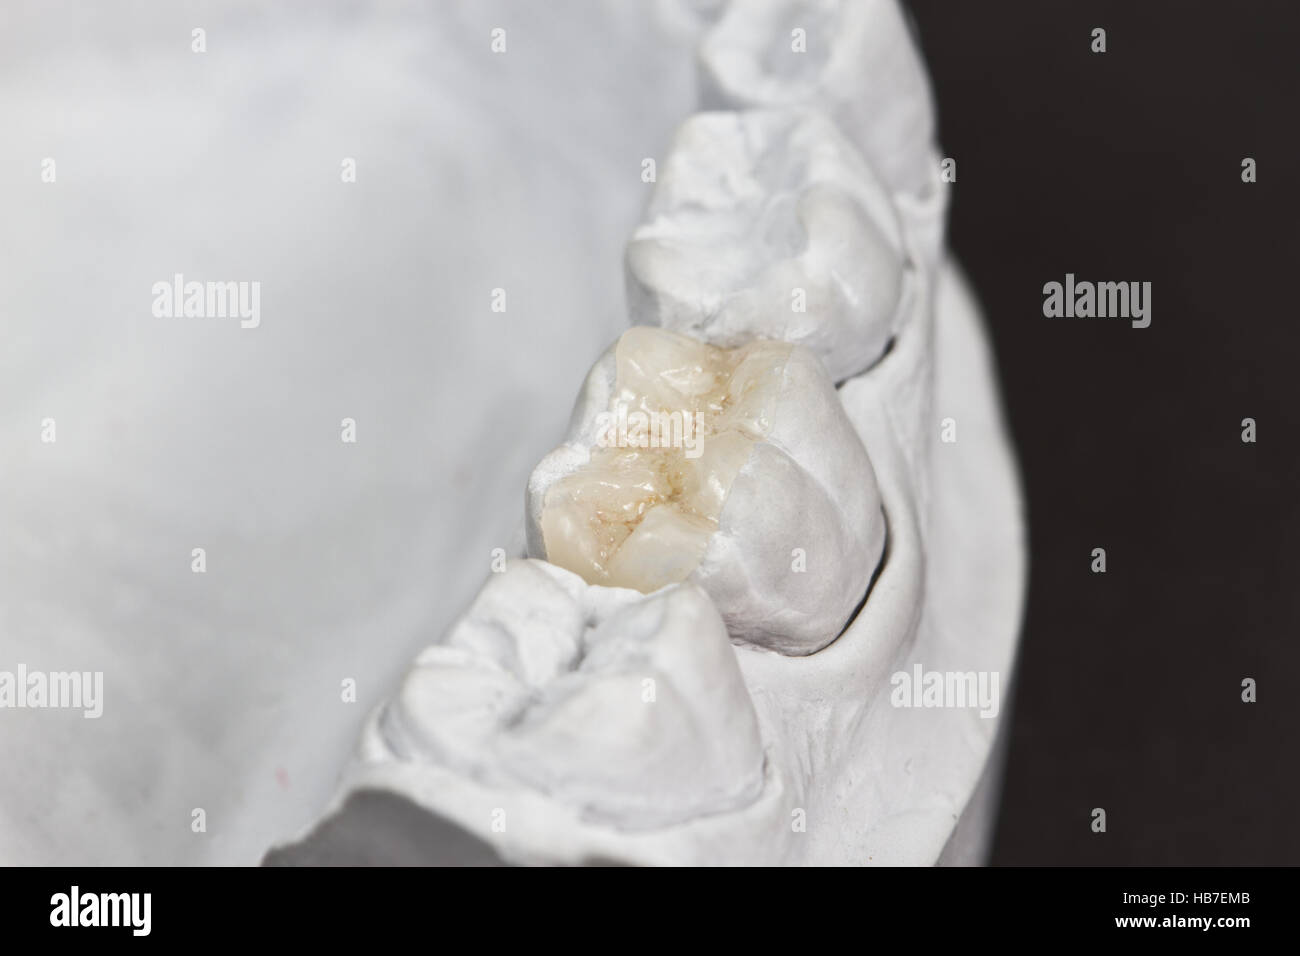 Libre pour les soins dentaires d'onlay sur une molaire est indiqué sur un modèle en plâtre Banque D'Images